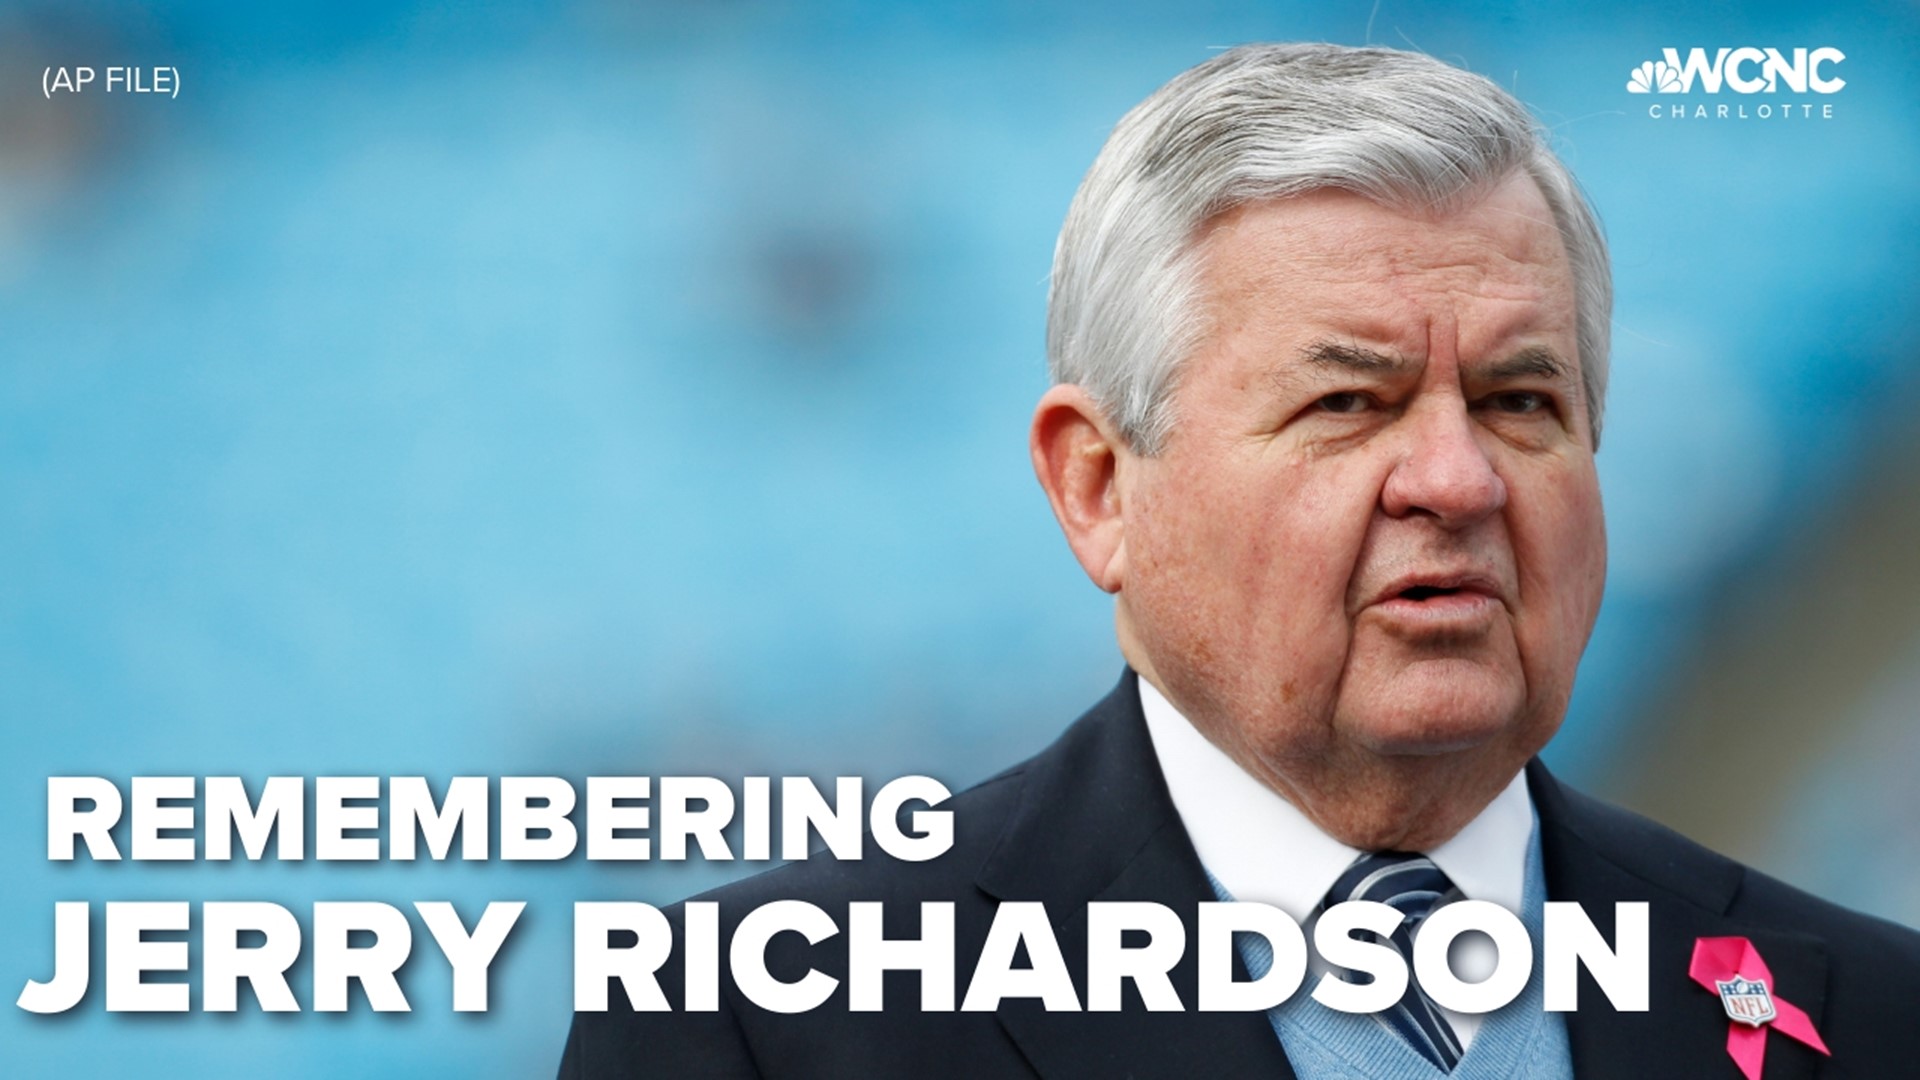 Richardson passed away at age 86.